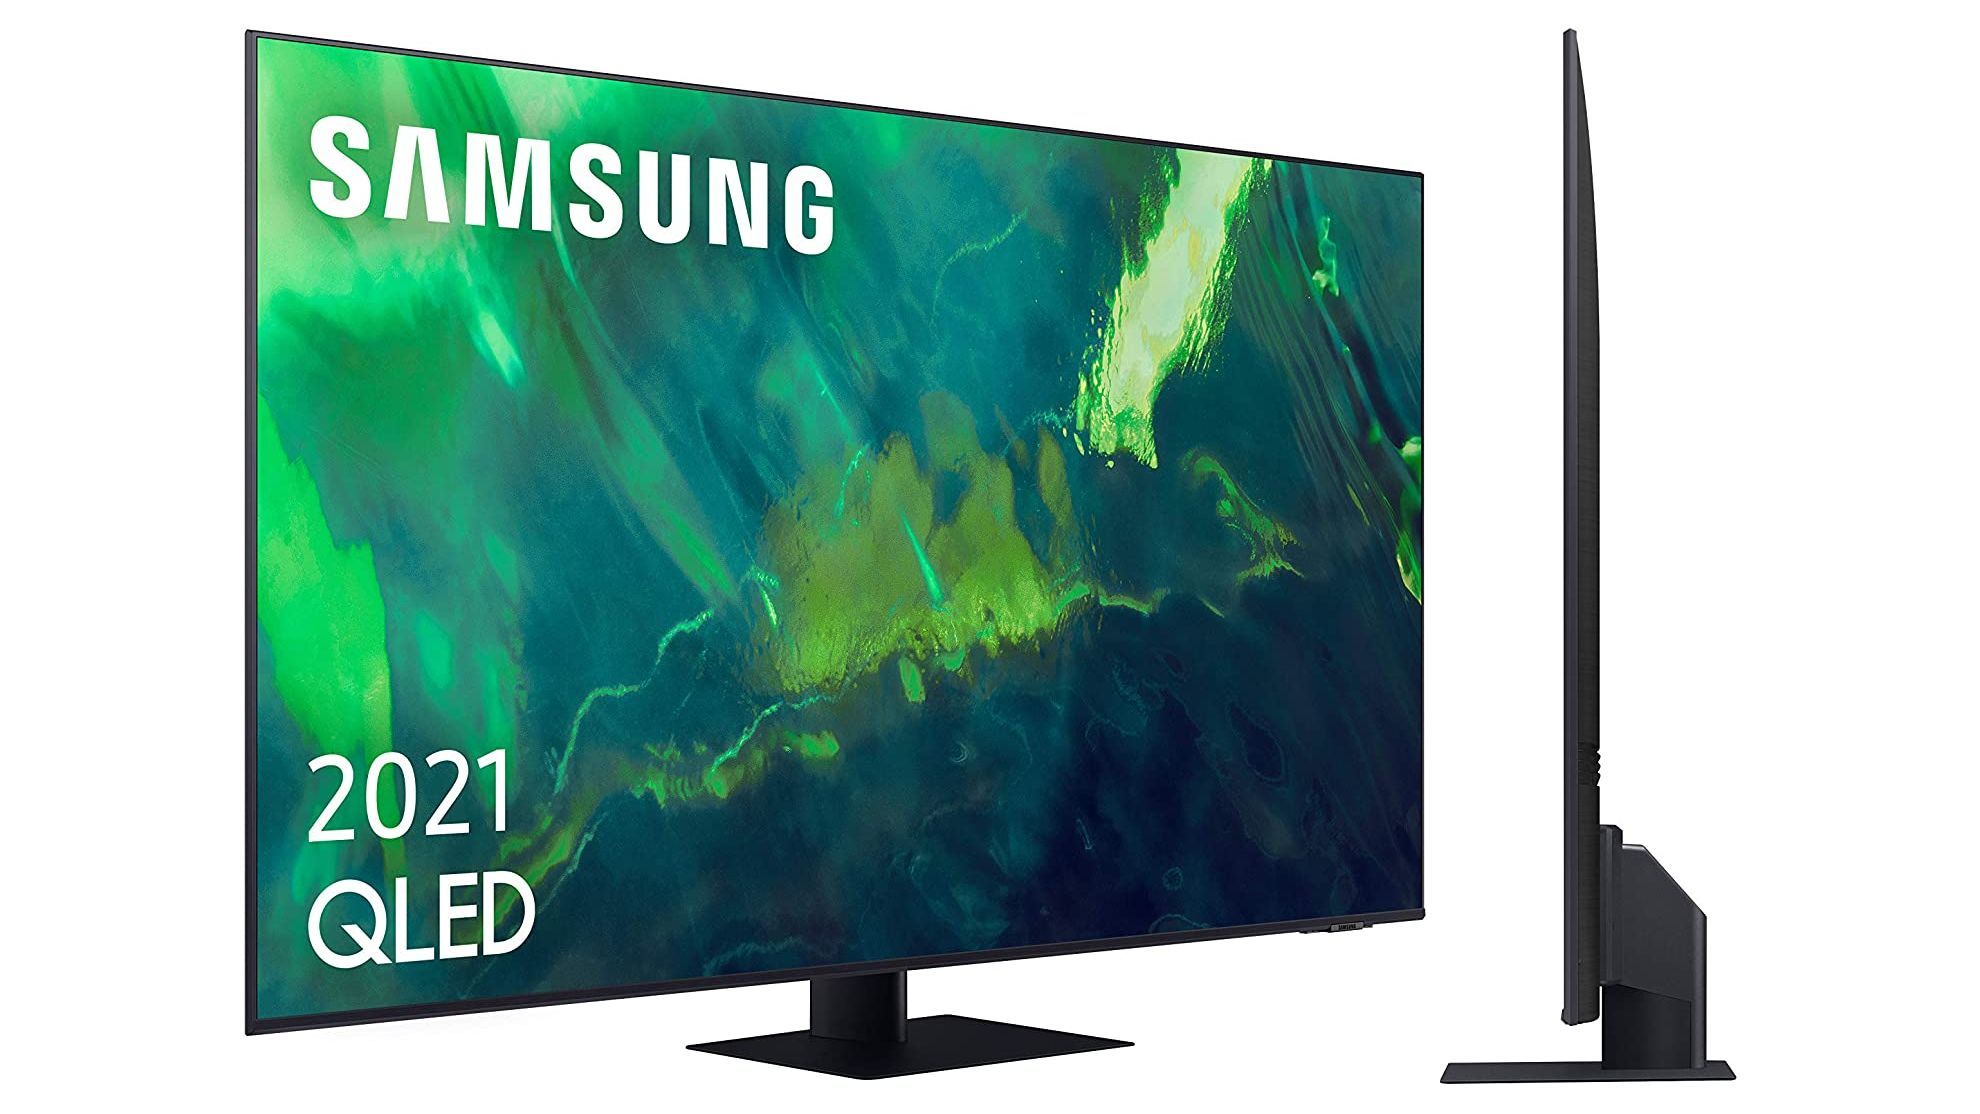 Oferta top: puedes comprar una 'smart TV' Samsung QLED de 65 pulgadas a su menor precio histórico (849 euros), gracias a un descuento 43% en Amazon |